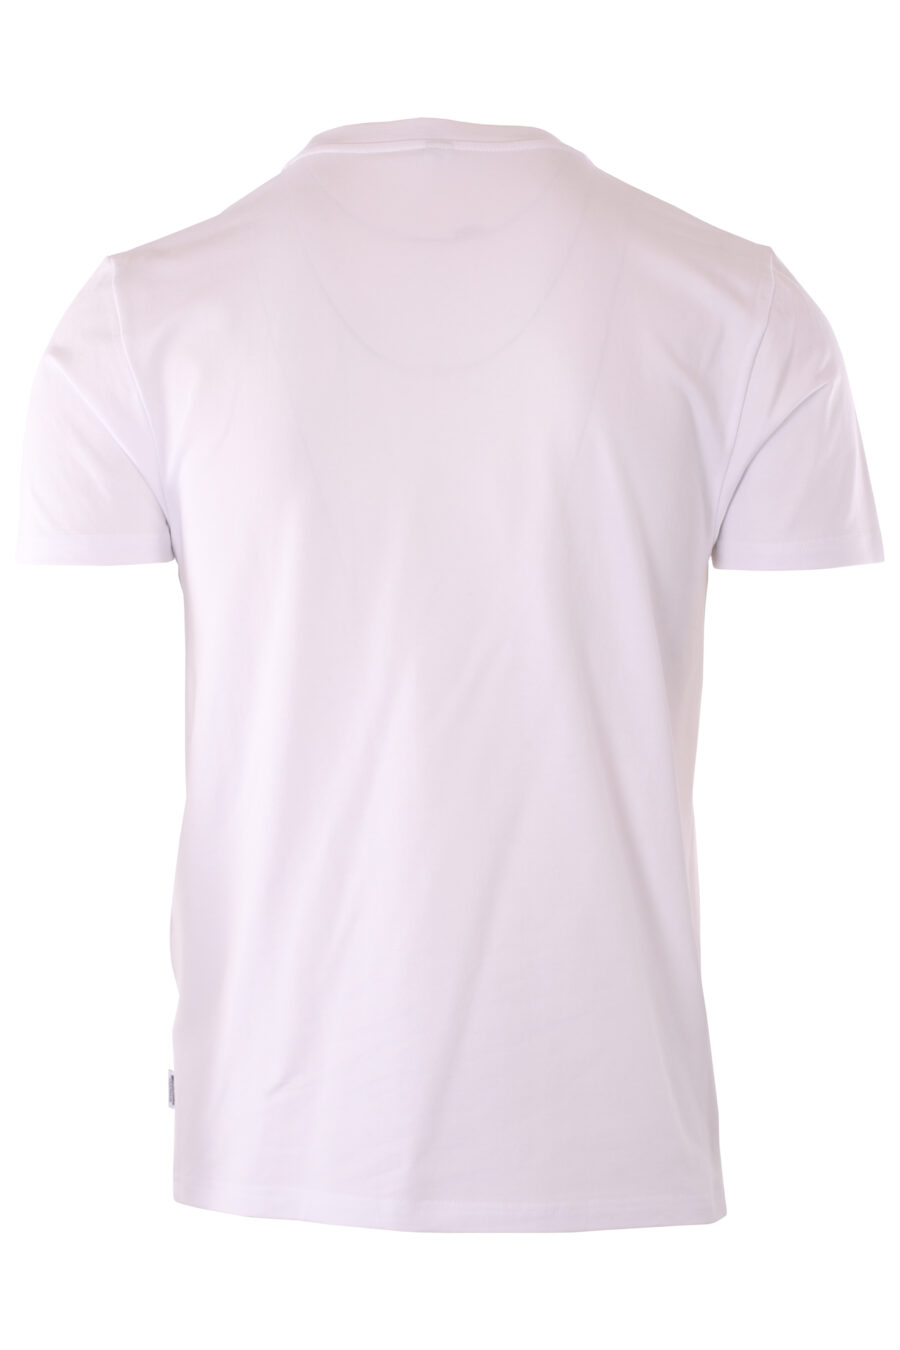 T-shirt blanc "slim fit" avec minilogue d'ours "underbear" - IMG 6608